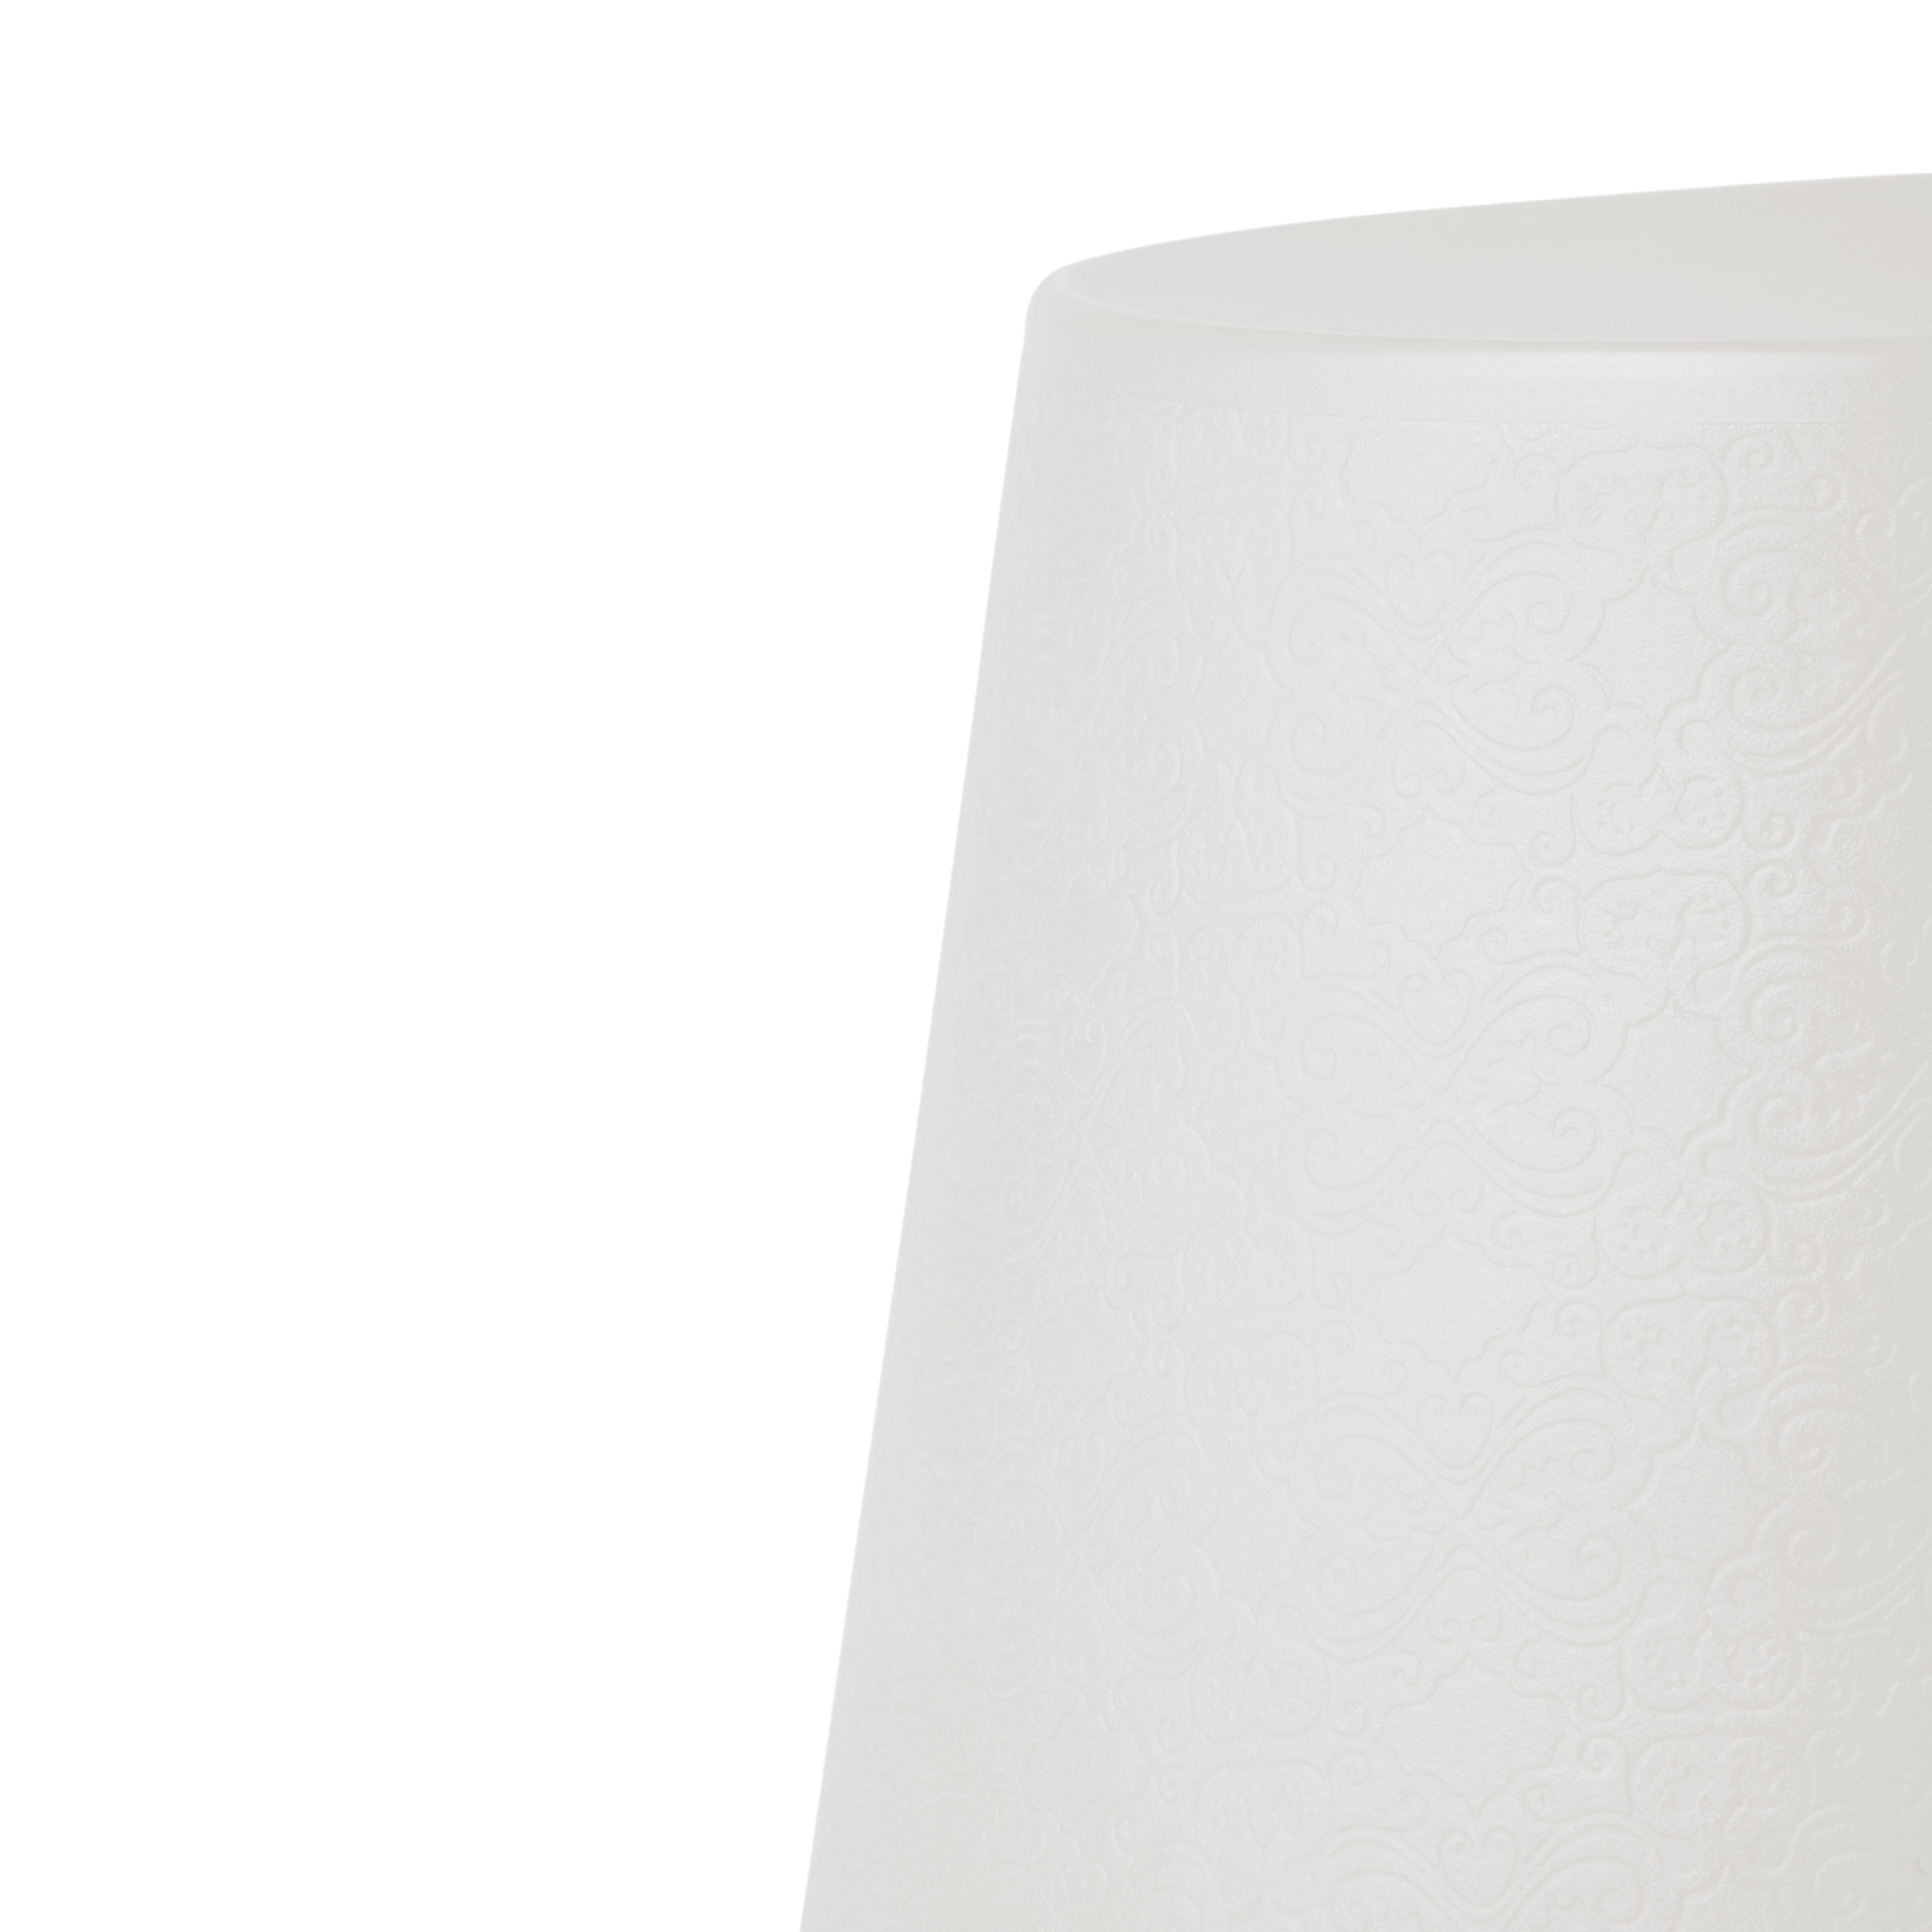 Milchig-weißer Ali Baba-Hocker von Giò Colonna Romano
Abmessungen: Ø 43 x H 41 cm.
MATERIALEN: Polyethylen.
Gewicht: 2,5 kg.

Erhältlich in einer Standardversion und einer LED-Version. Preise können abweichen. Erhältlich in verschiedenen